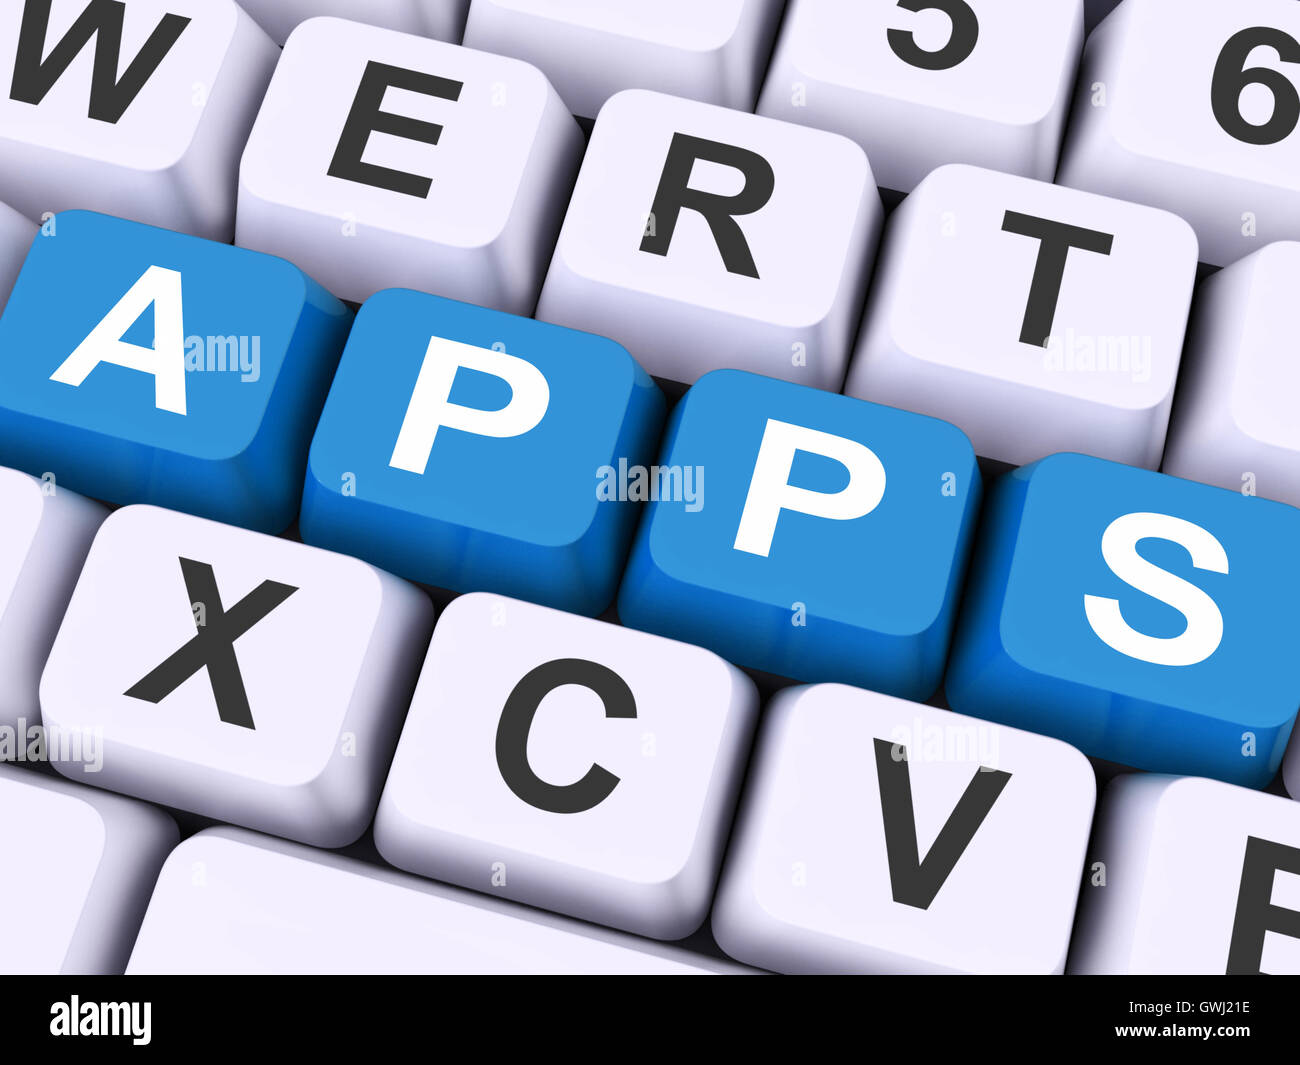 Apps-Schlüssel zeigt Web-Anwendung oder Anwendungen Stockfoto